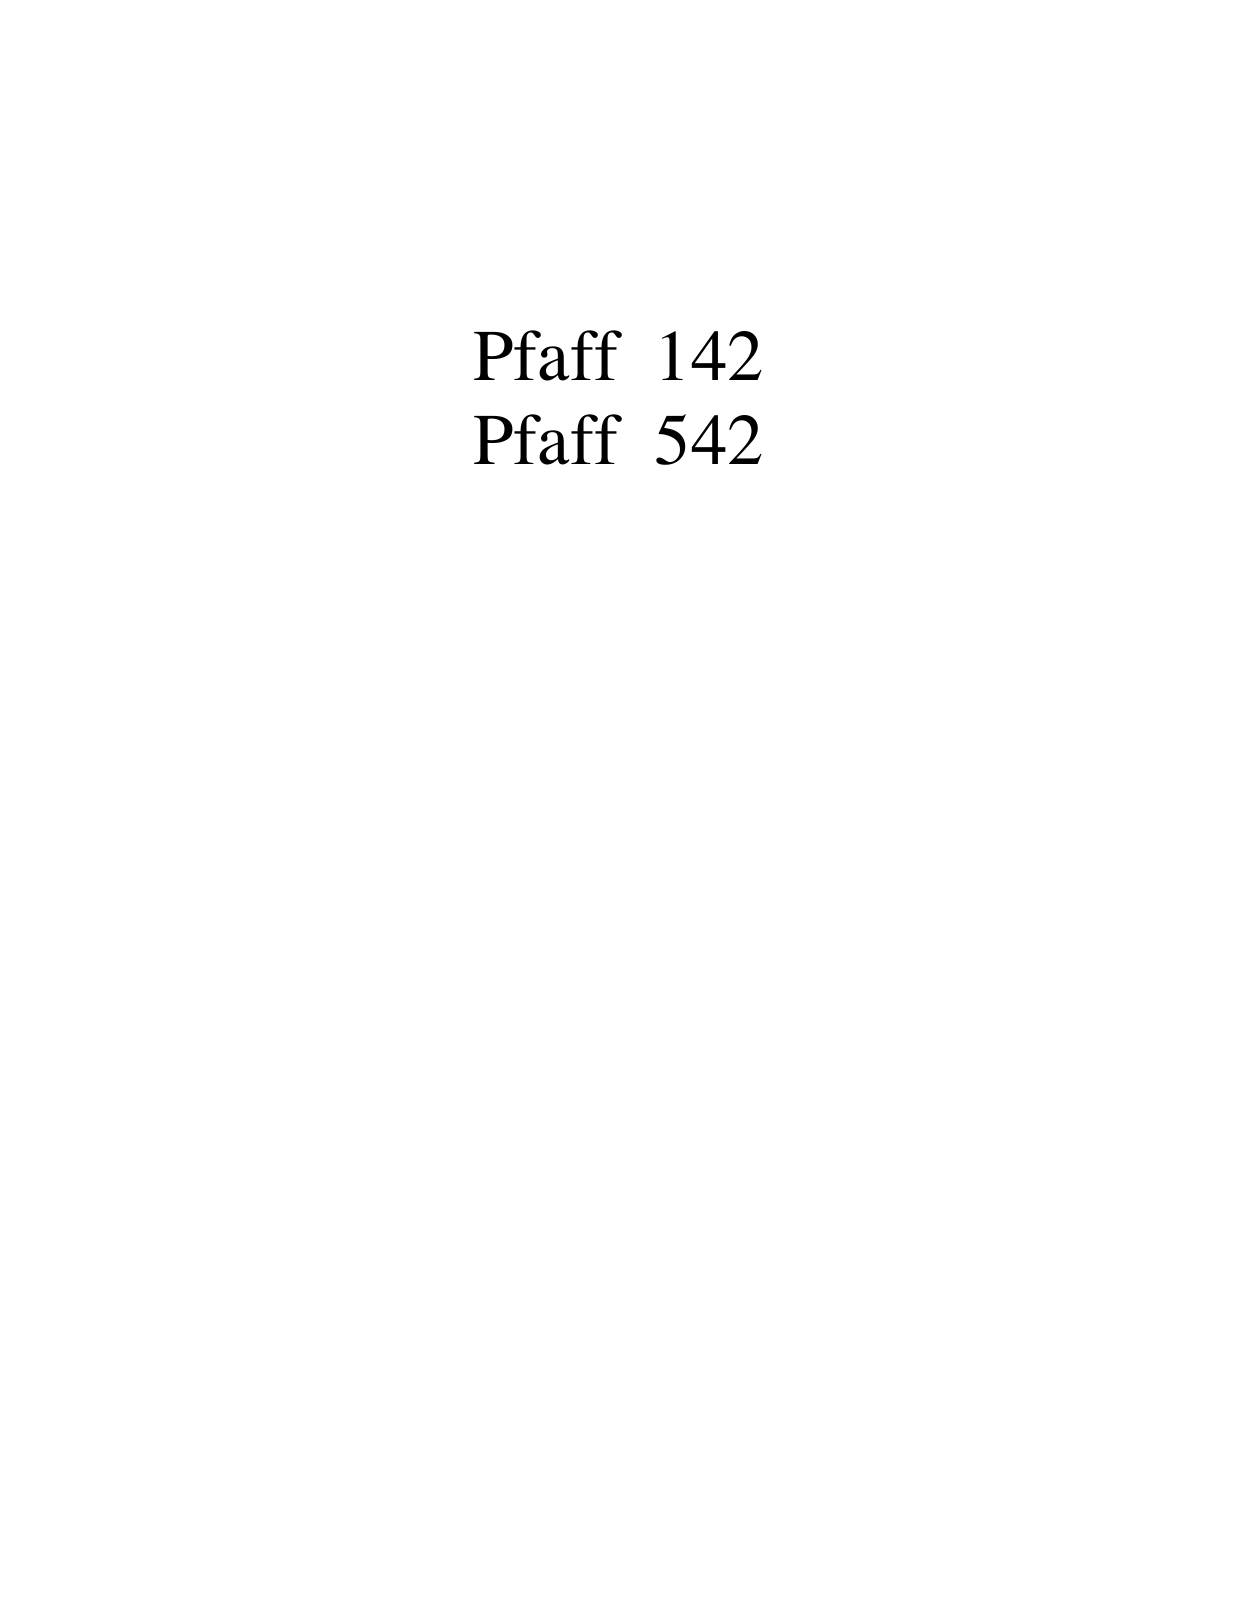 PFAFF 142, 542 Parts List